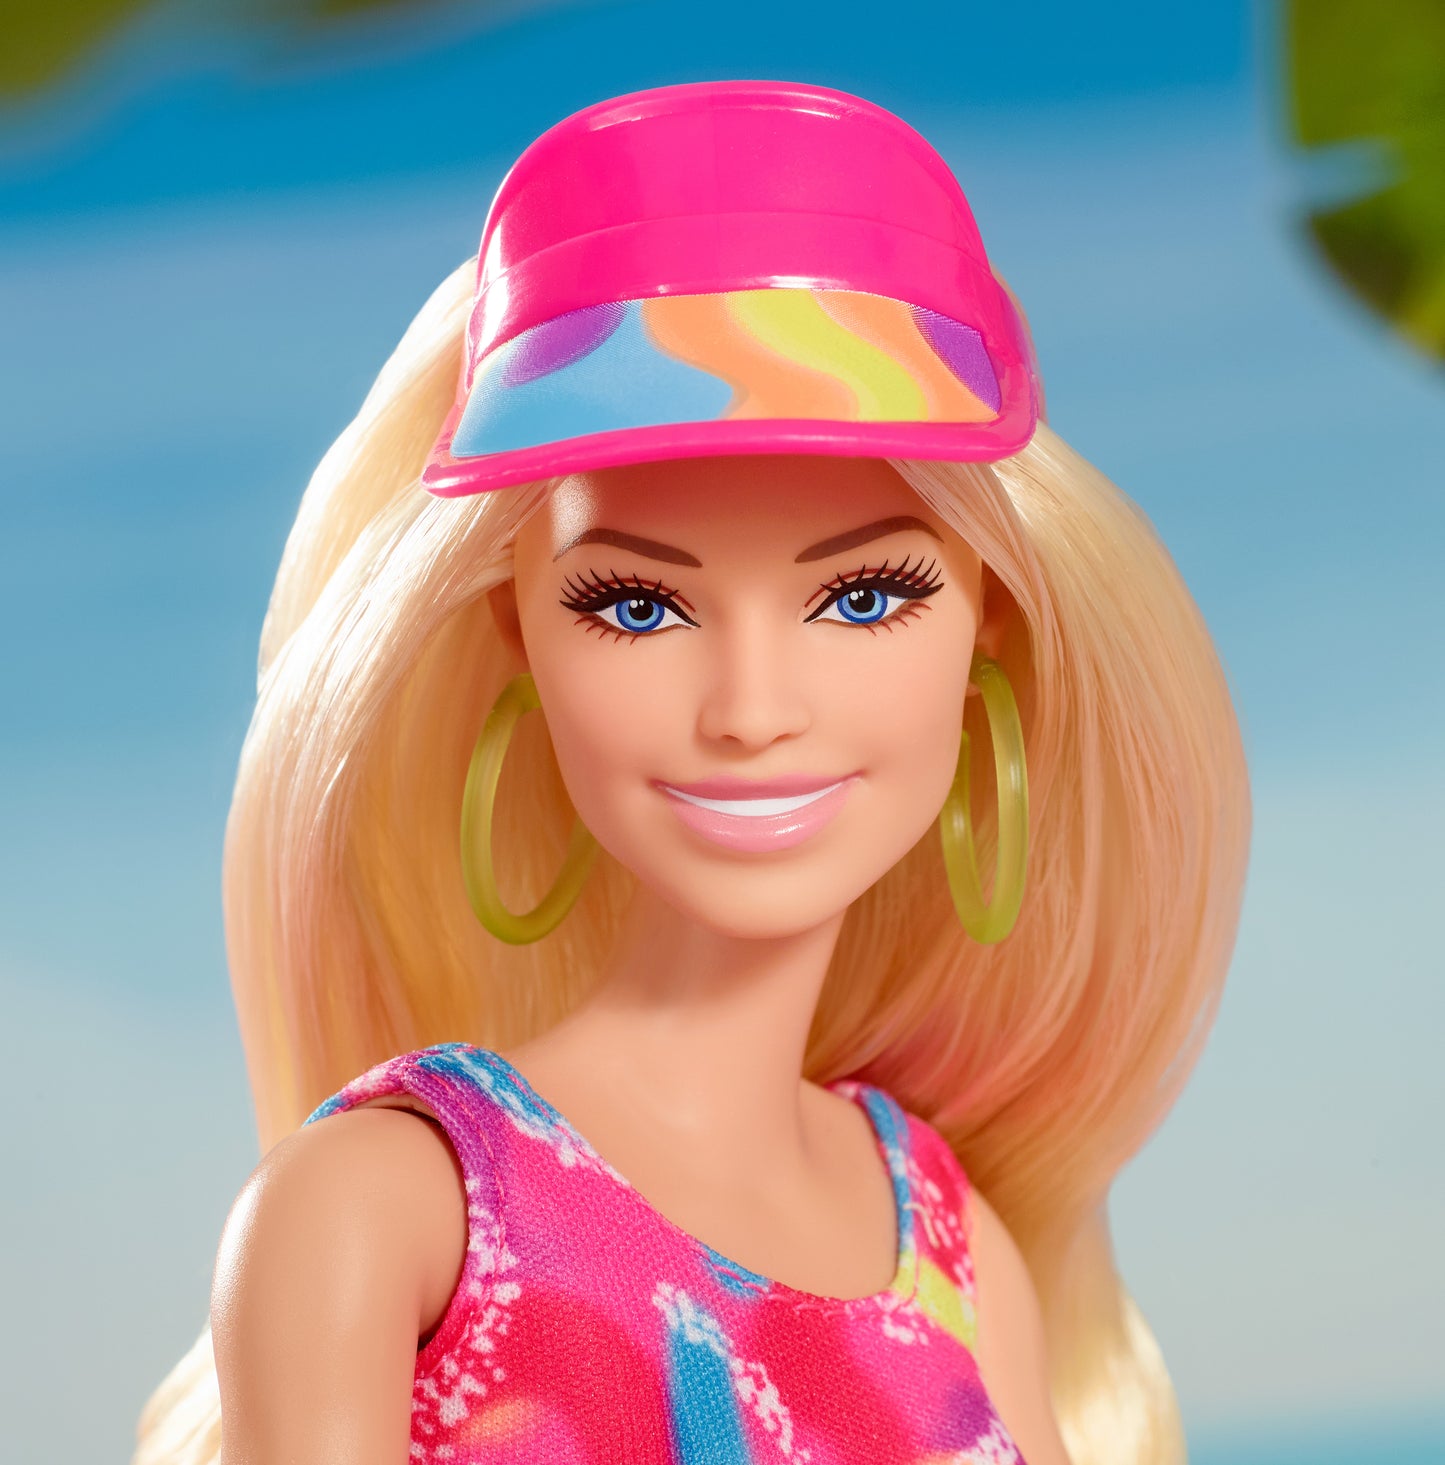 Barbie Movie Doll, Margot Robbie as Barbie in Inline Skating Outfit